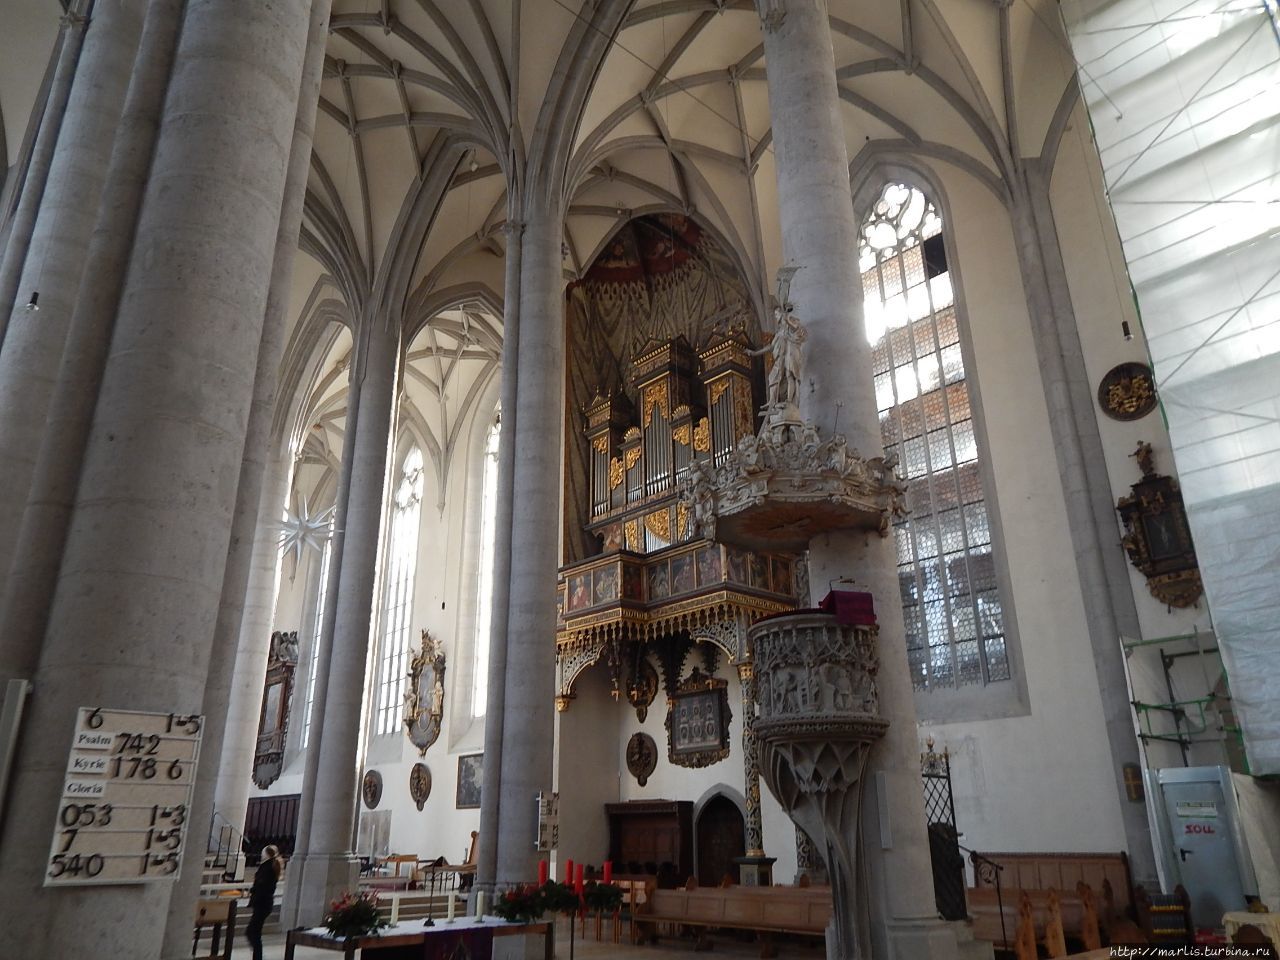 Церковь св. Георгия, Колокольня пророка Даниилa Нёрдлинген, Германия